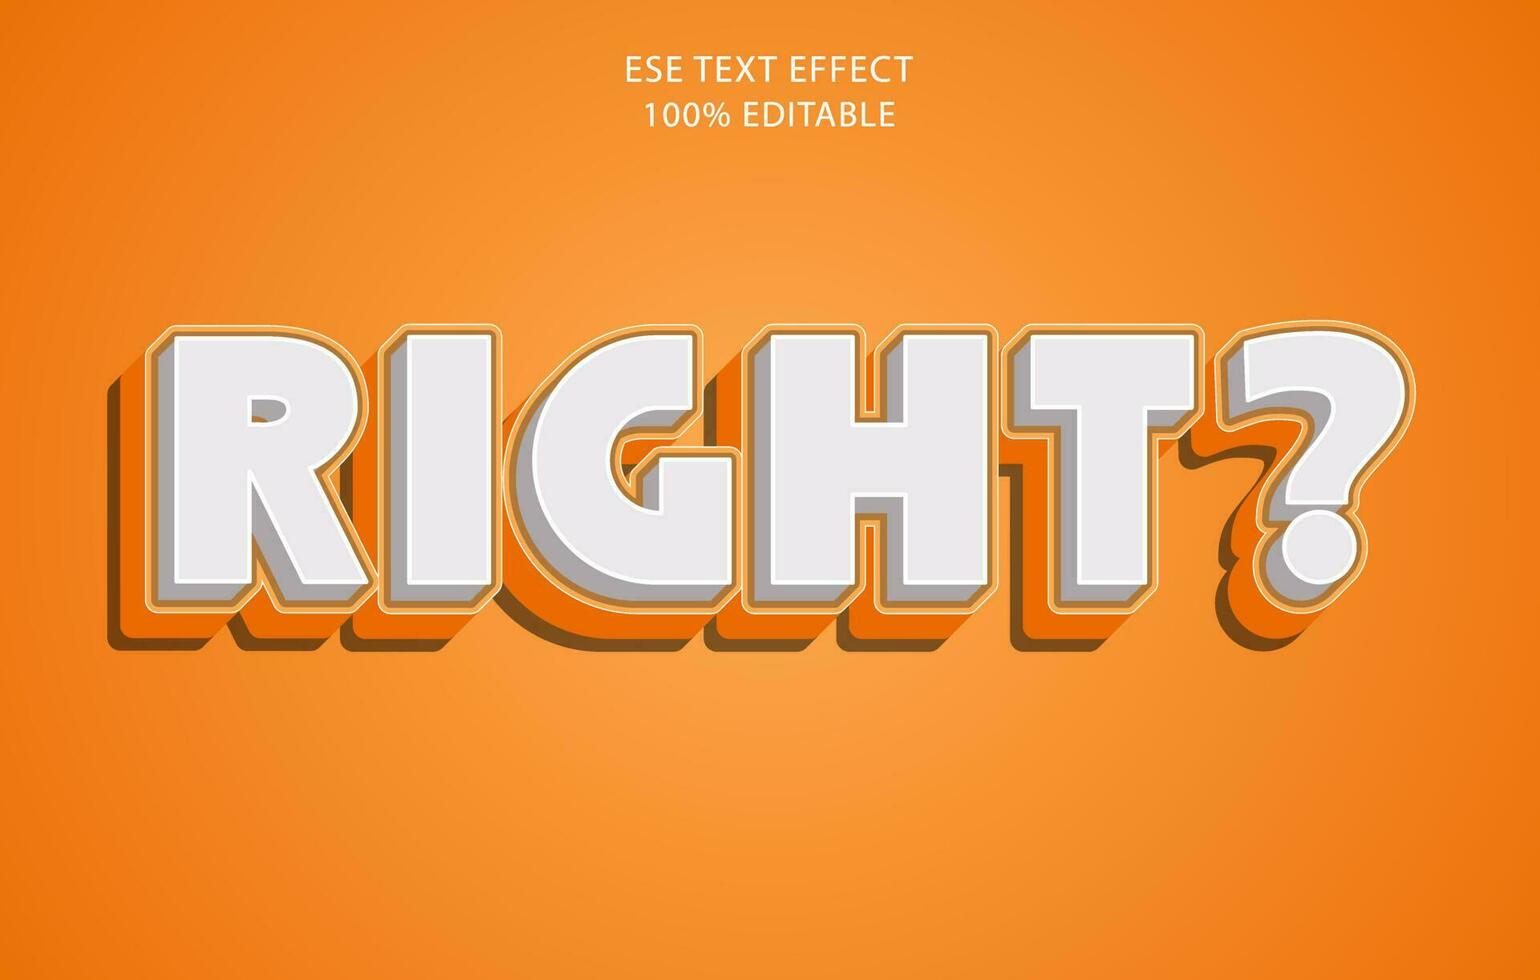 efecto de texto 3d editable, estilo de efecto de texto, plantilla de efecto de texto editable derecha vector